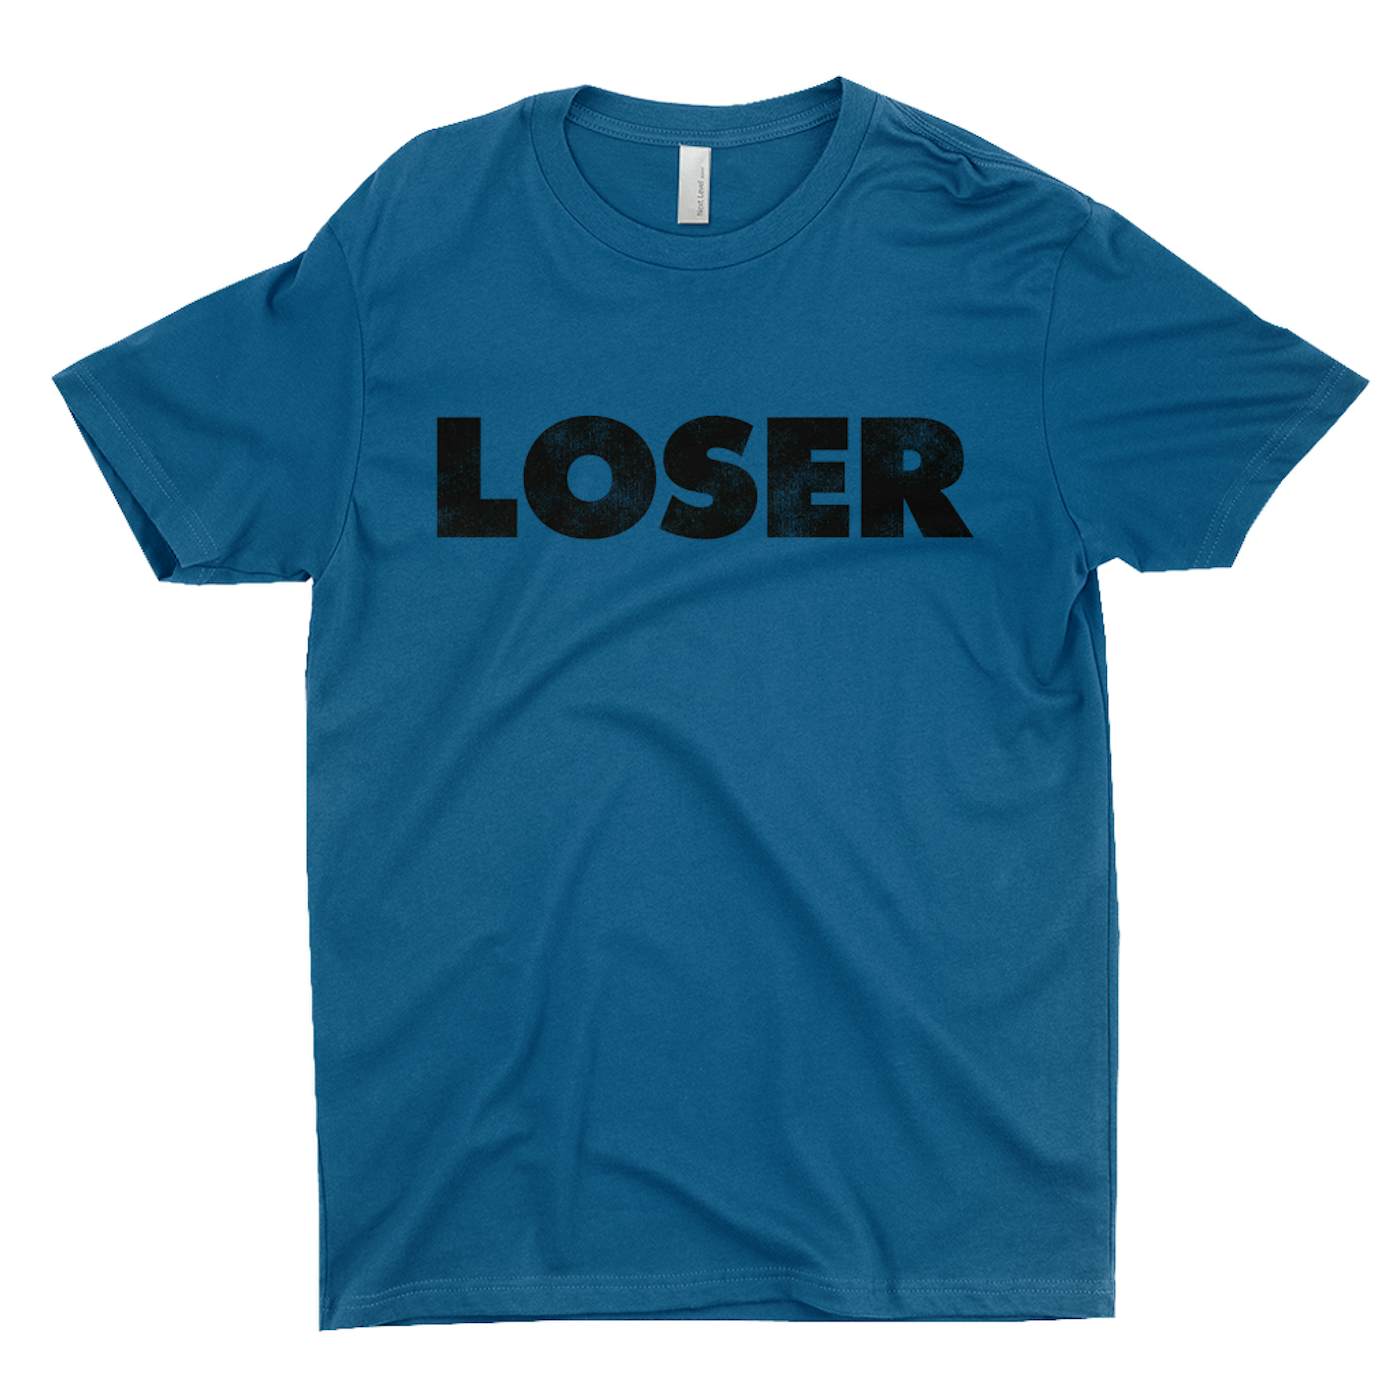 Loser Worn By Eddie Vedder Shirt - Pearl Jam